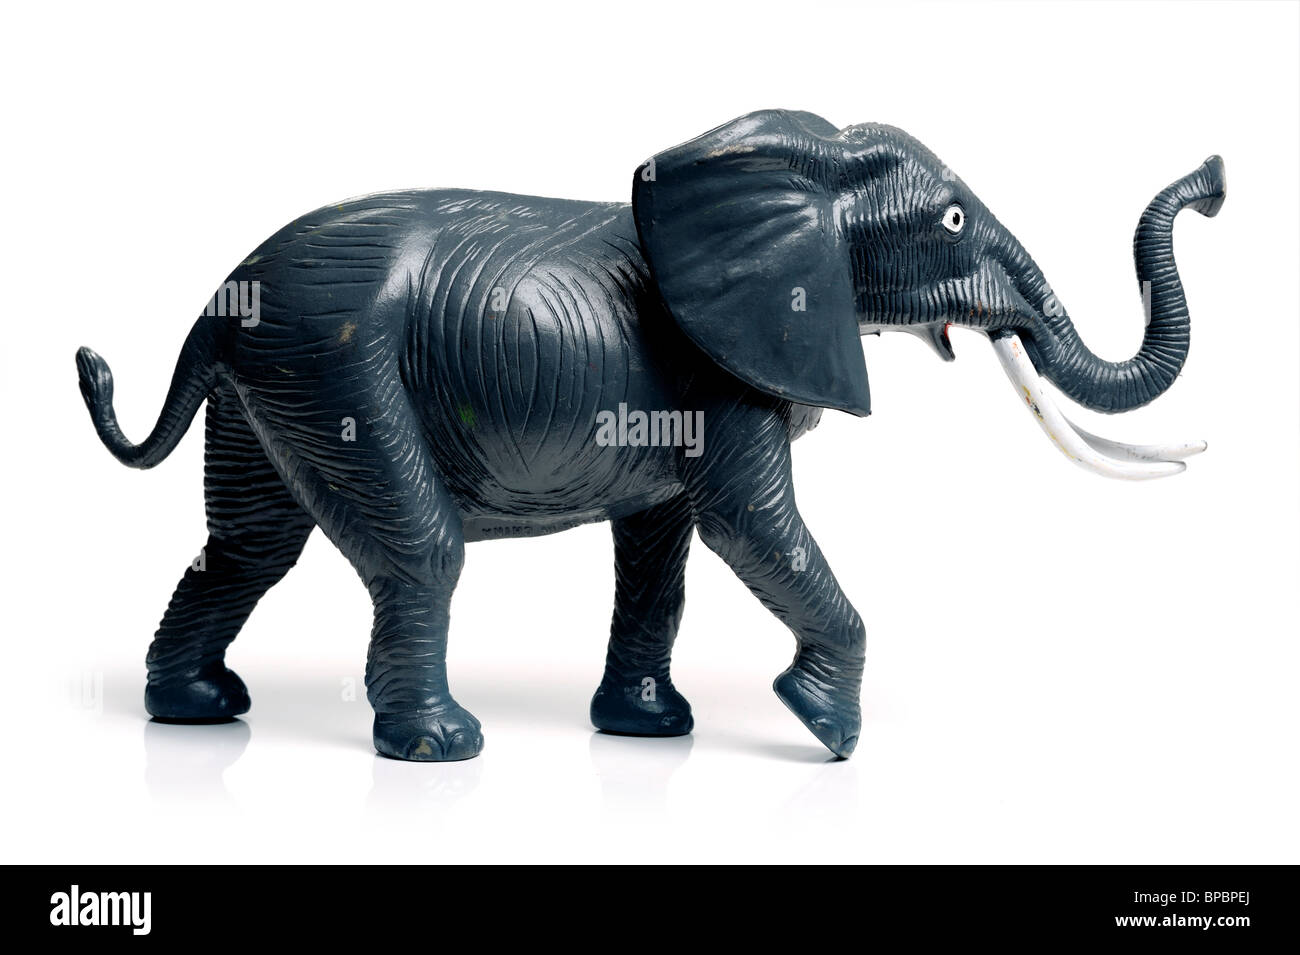 Giocattolo elefante immagini e fotografie stock ad alta risoluzione - Alamy